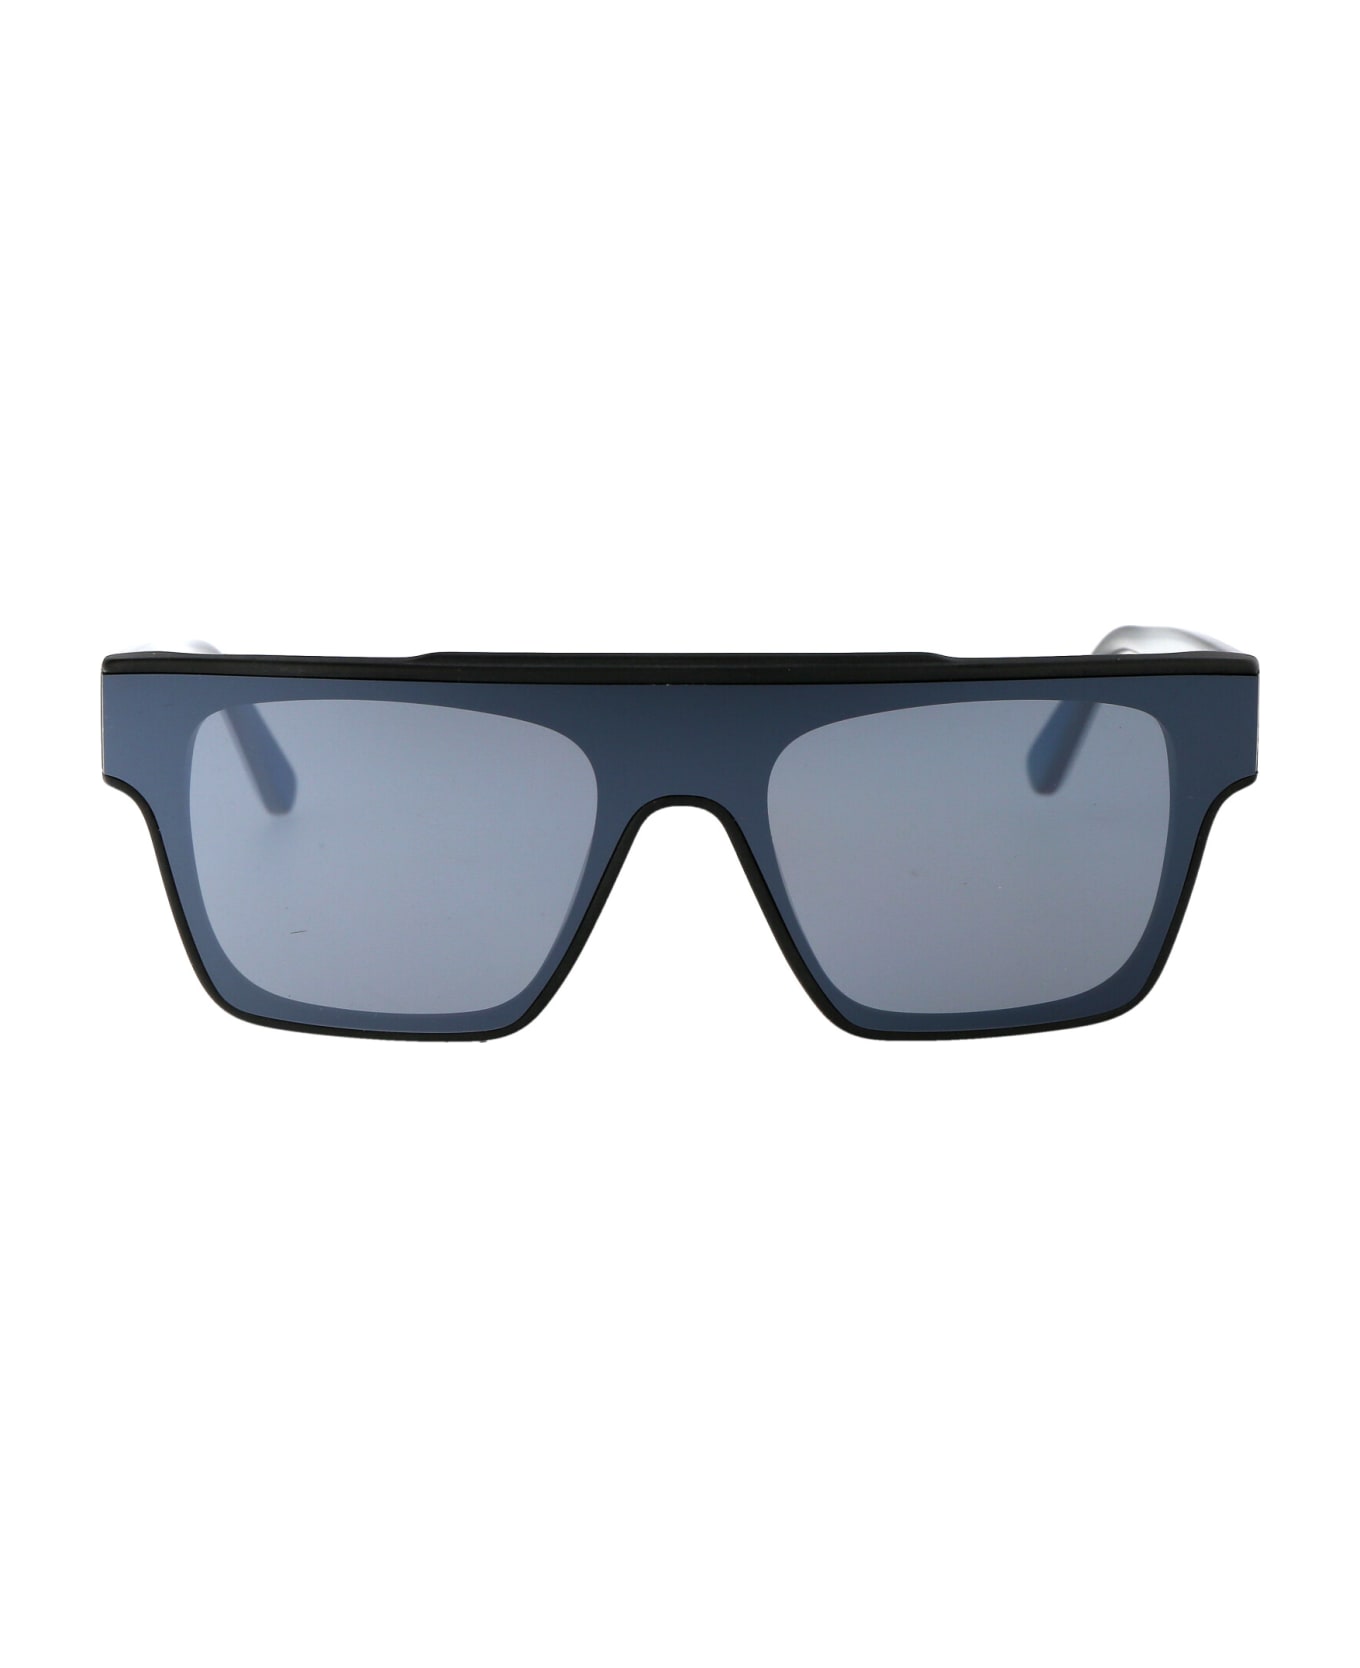 Karl Lagerfeld Kl6090s Sunglasses - 002 MATTE BLACK